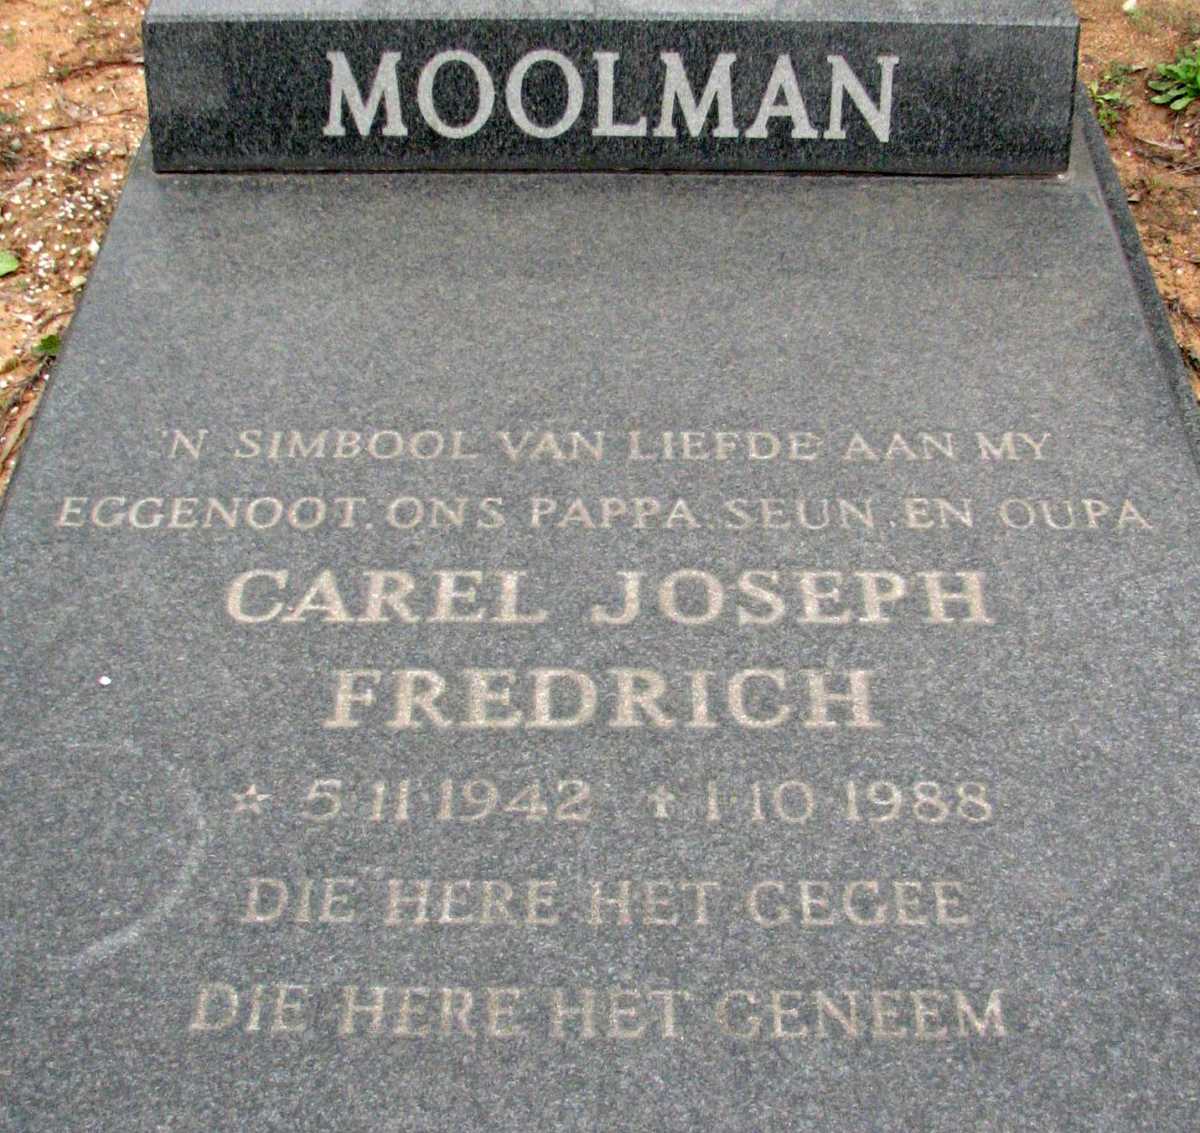 MOOLMAN Carel Joseph Fredrich 1942-1988